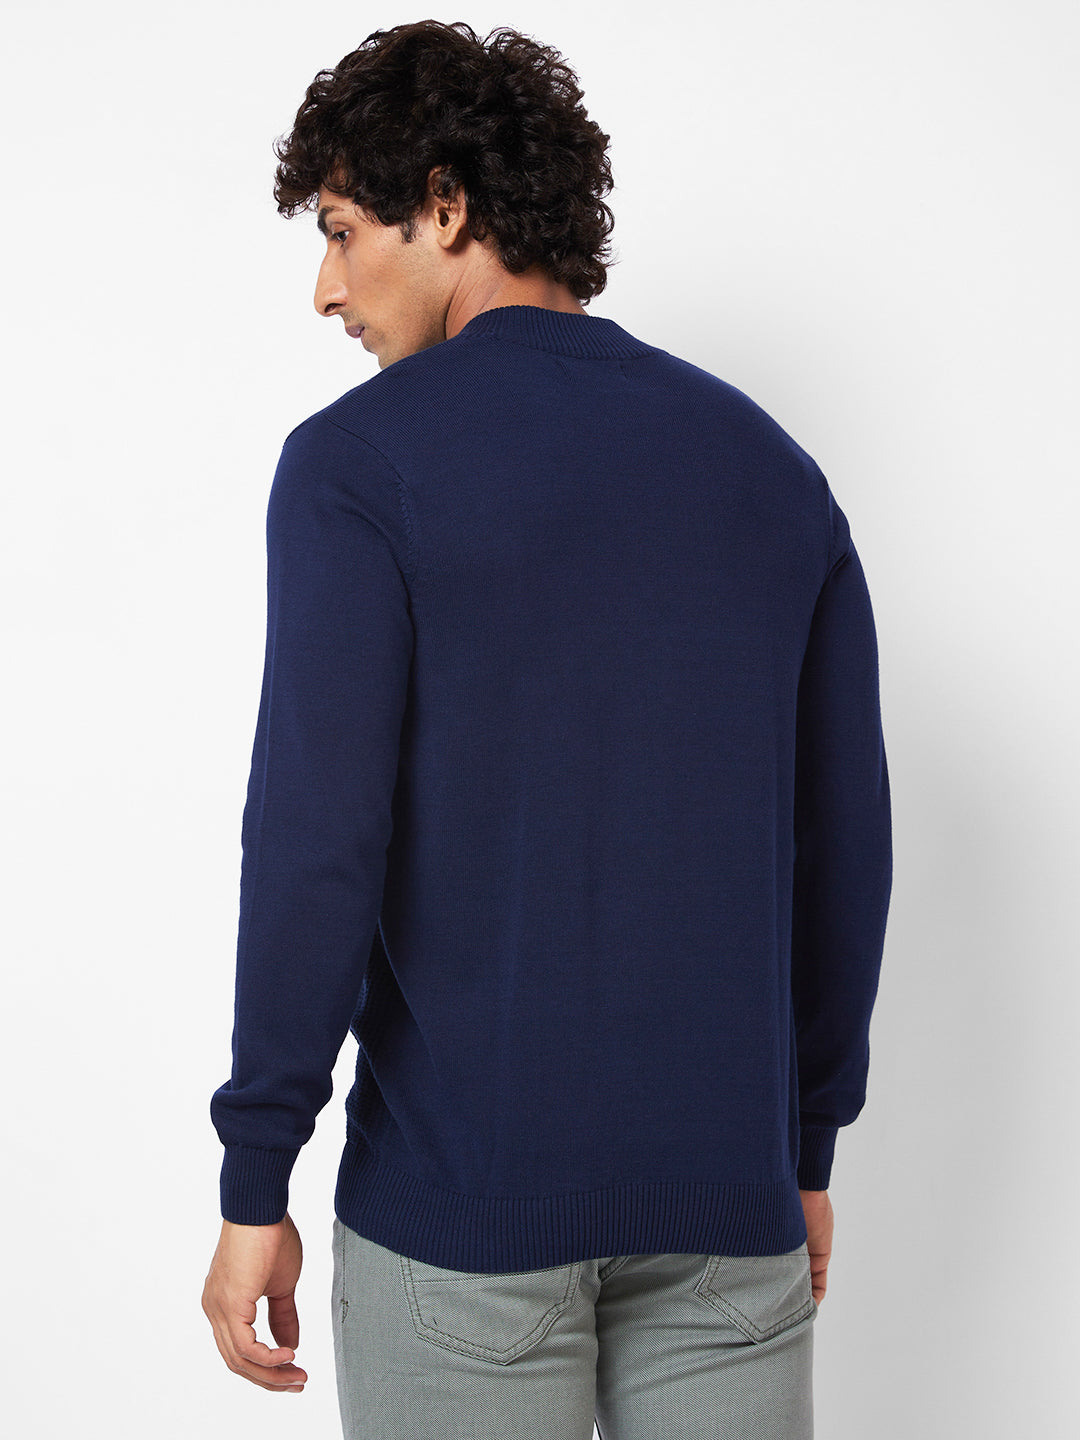 Spykar Polo Collar Full Sleeves Blue Sweater For Men